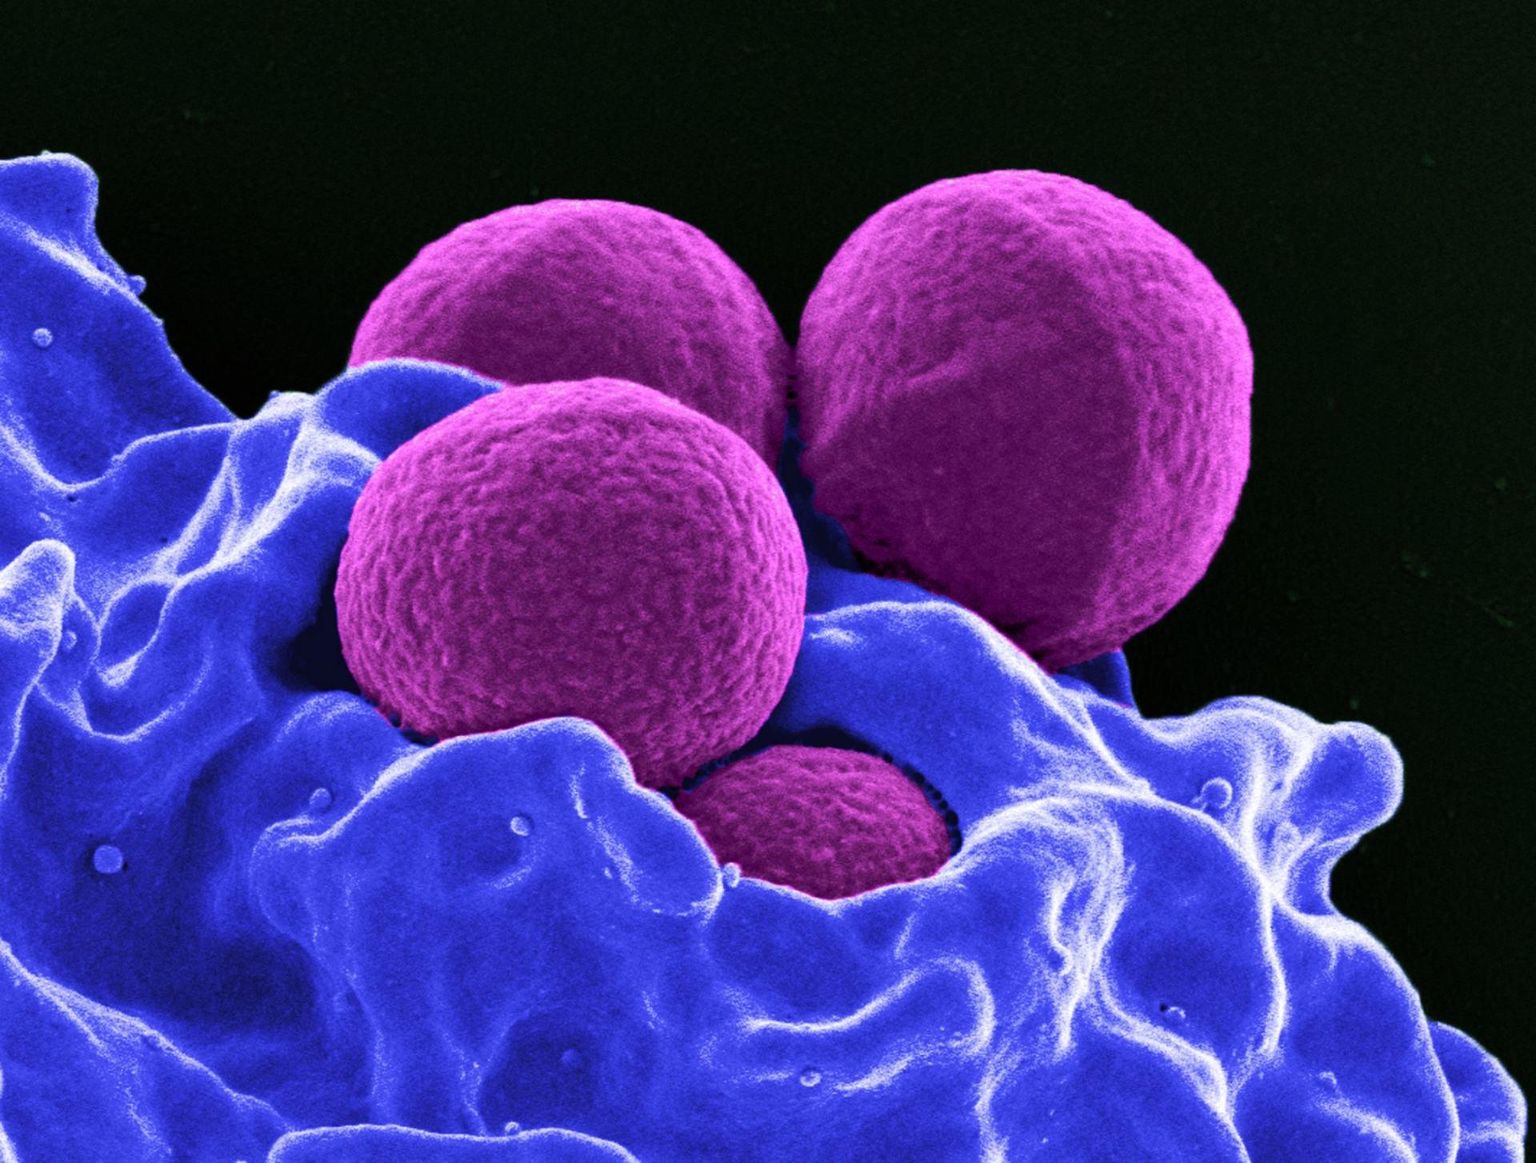 Valgelible (pildil küll sinine) õgimas antibiootikumiresitentsete Staphylococcus aureus&#39;e (MRSA – eetitsilliinresistentse stafülokoki) kogumit. Molekulaarste pintsettidega üksteisest lahutatult oleksid satfülokid olla antibiootikumidele või immuunsüsteemile oluliselt parem saak.